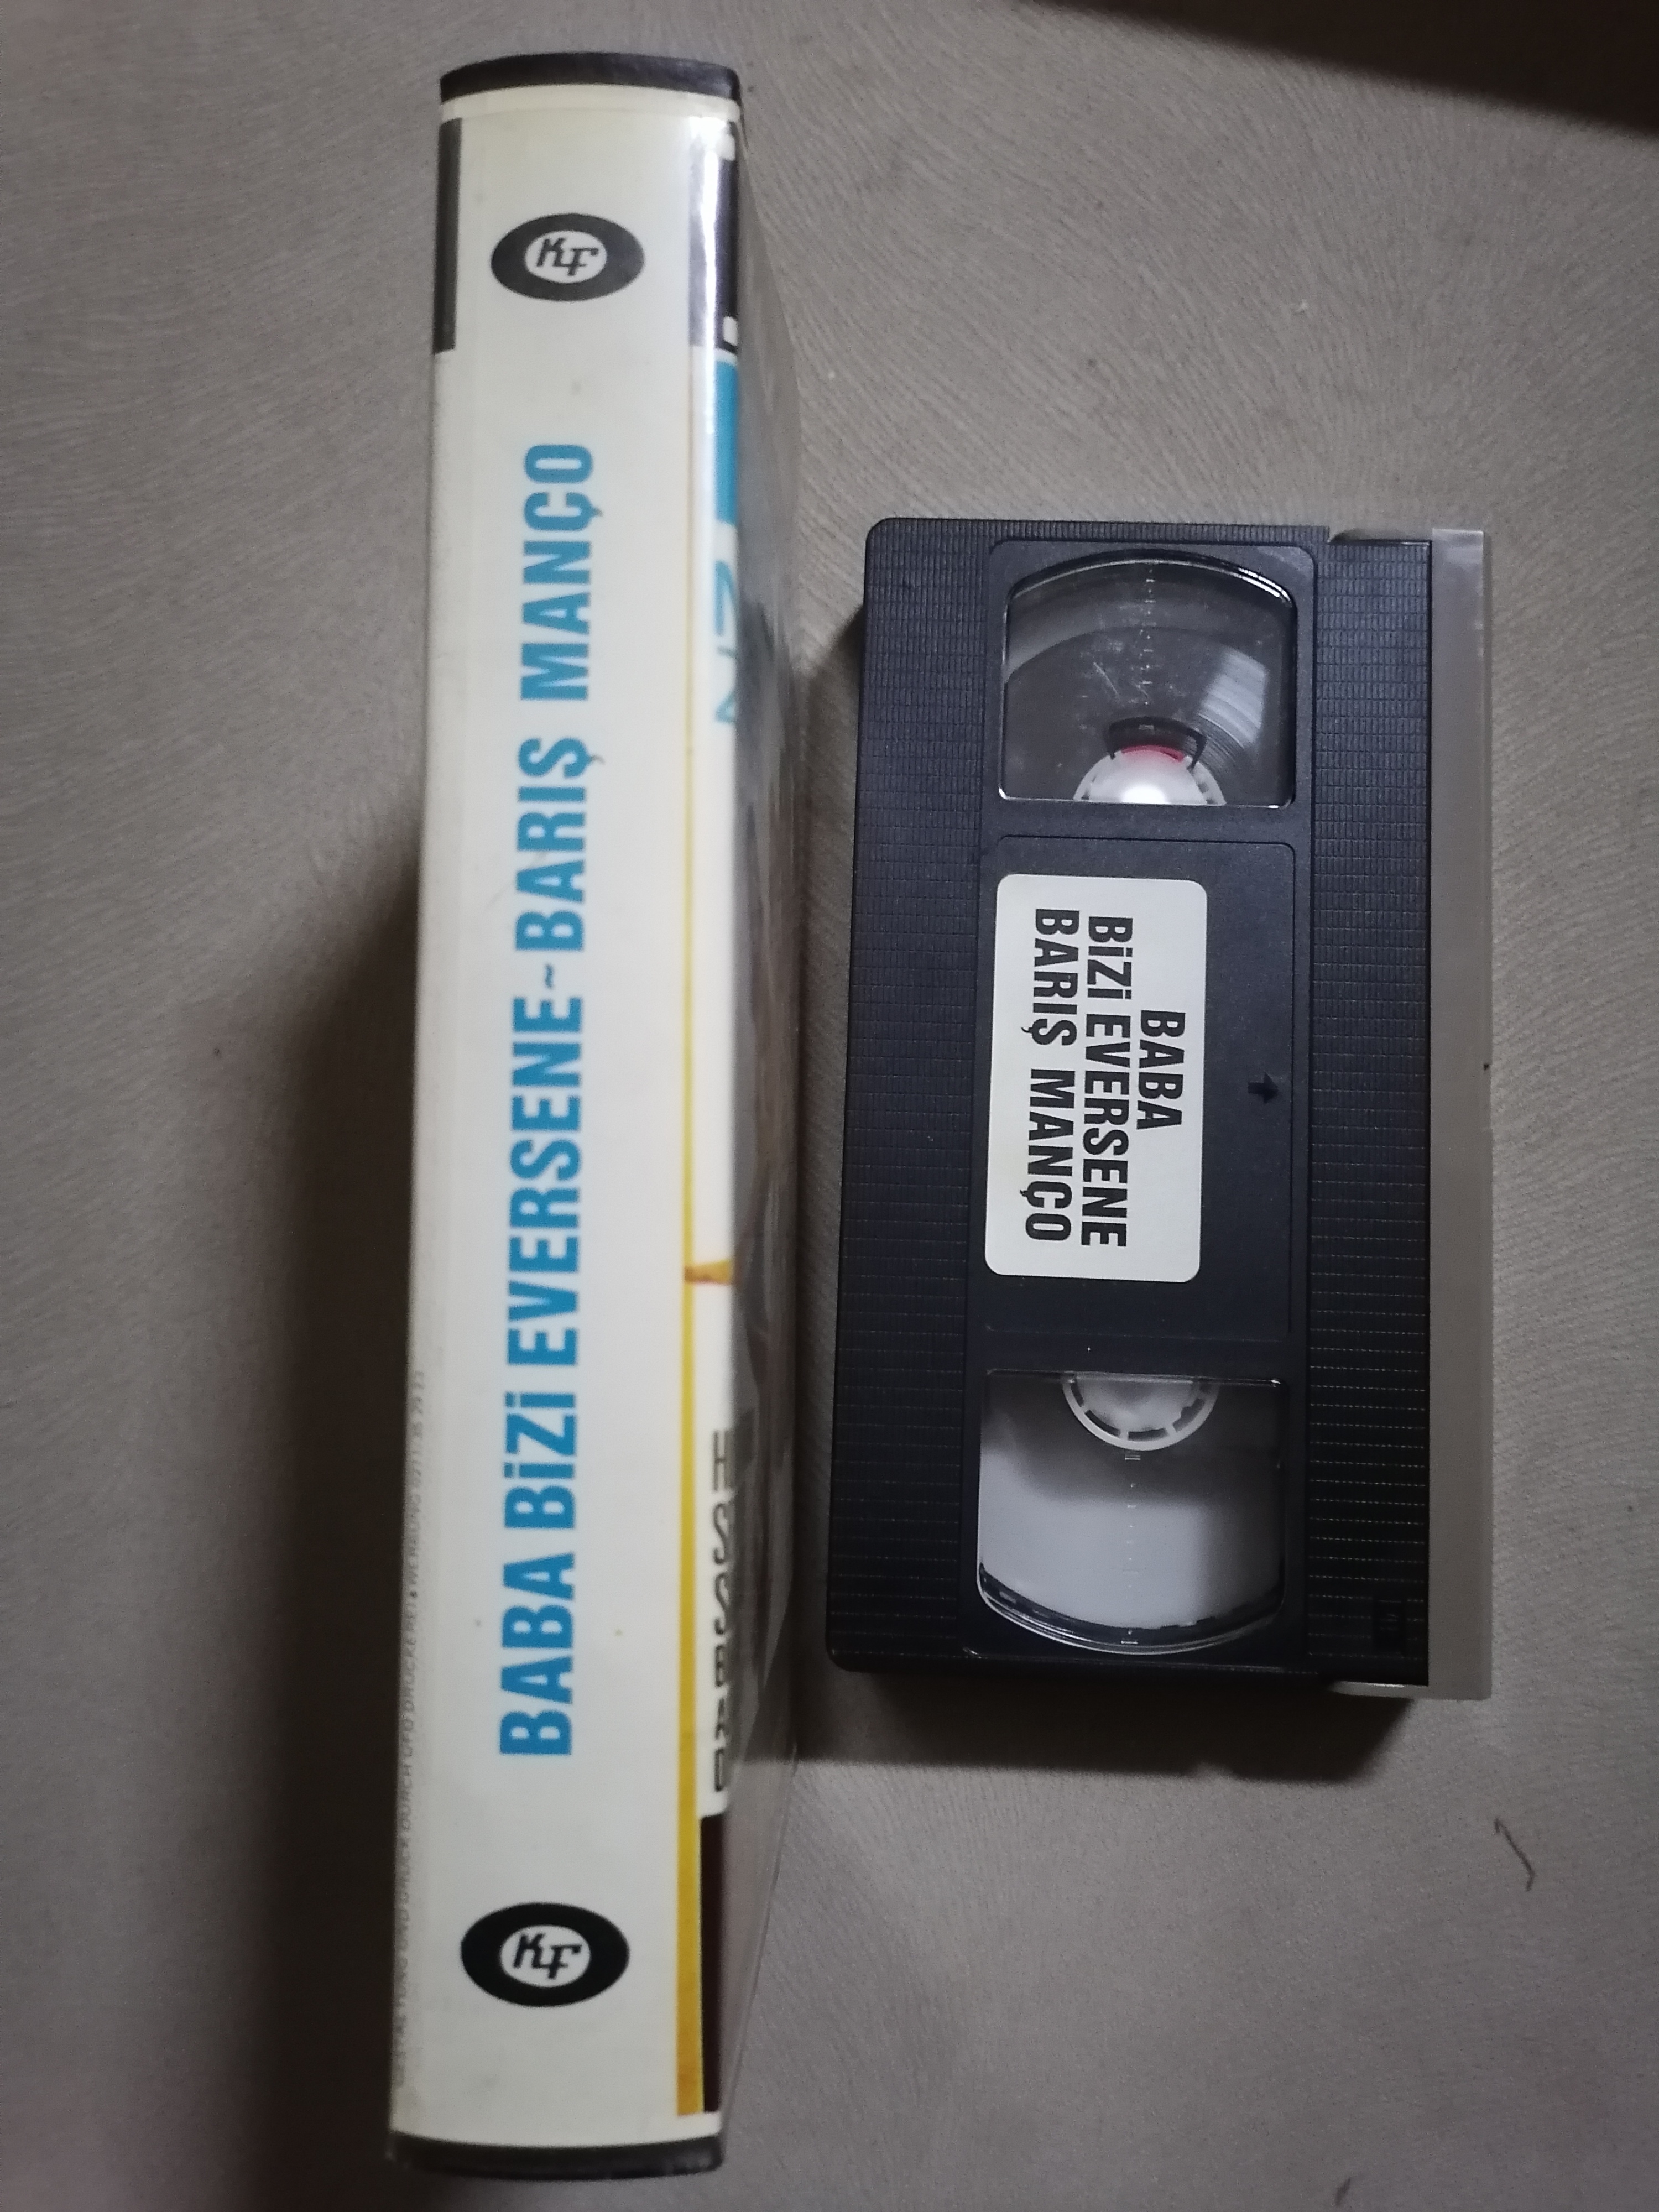 BABA BİZİ EVERSENE - Barış Manço / Meral Zeren -  Nadir VHS Kaset - Almanya Basım